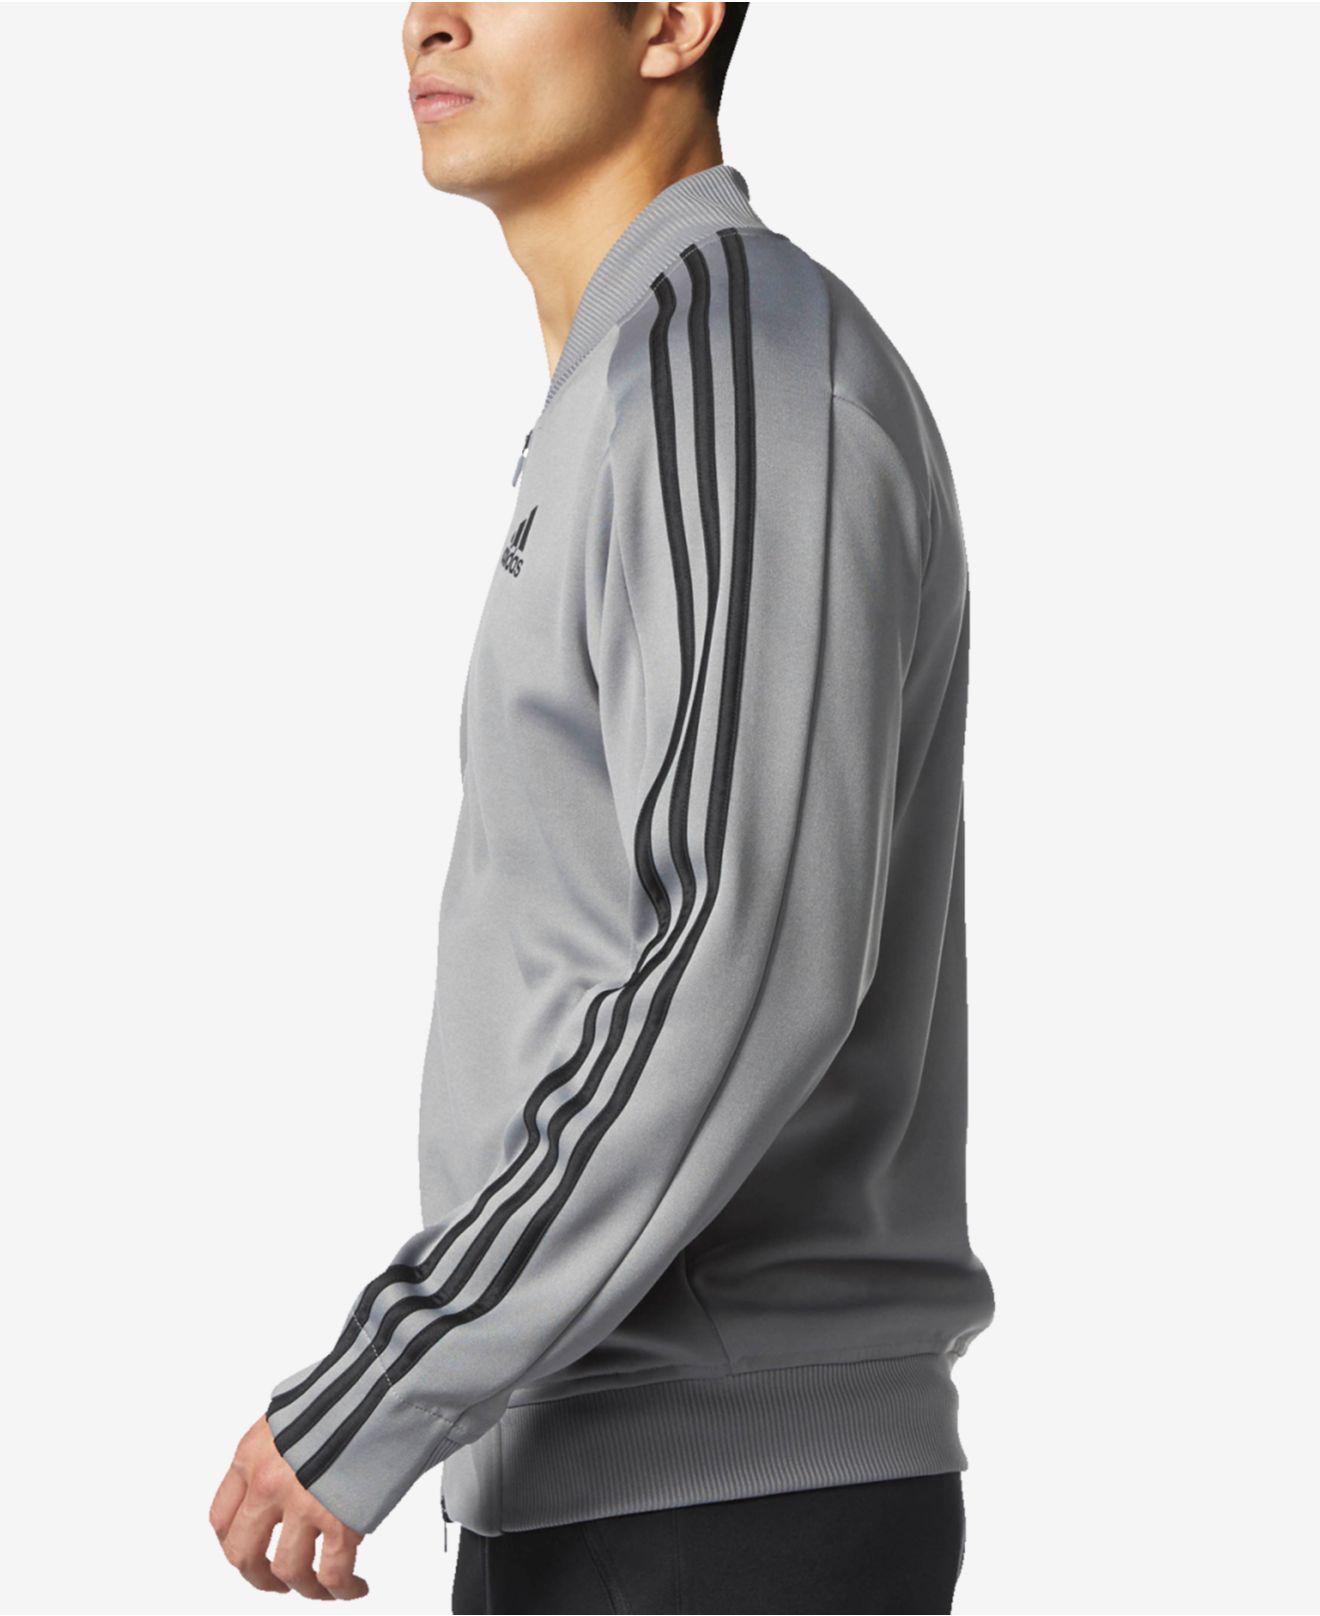 adidas squad id track jacket